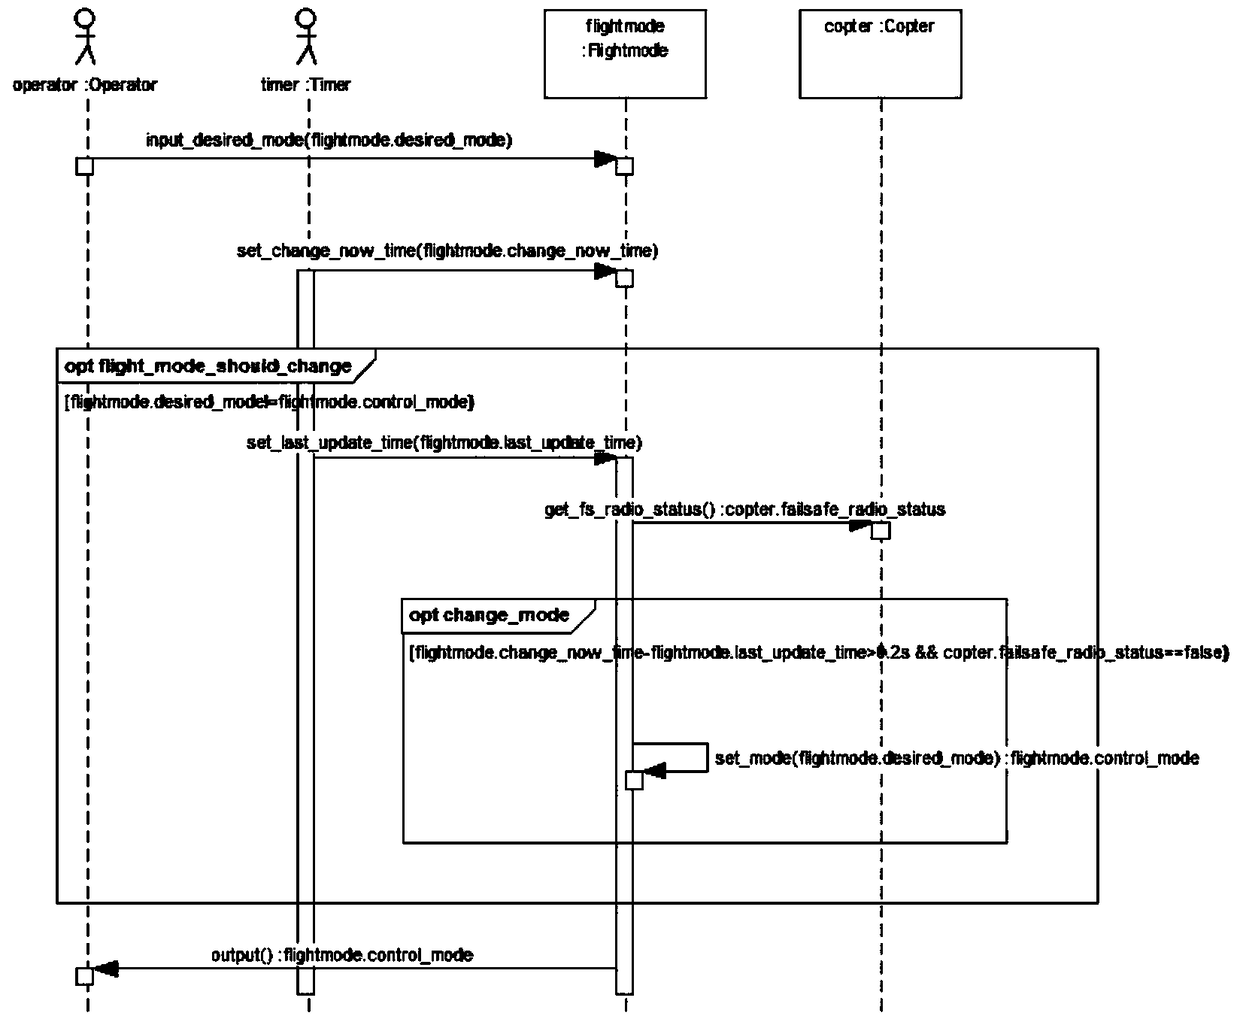 A Test Case Prioritization Method Based on UML Model